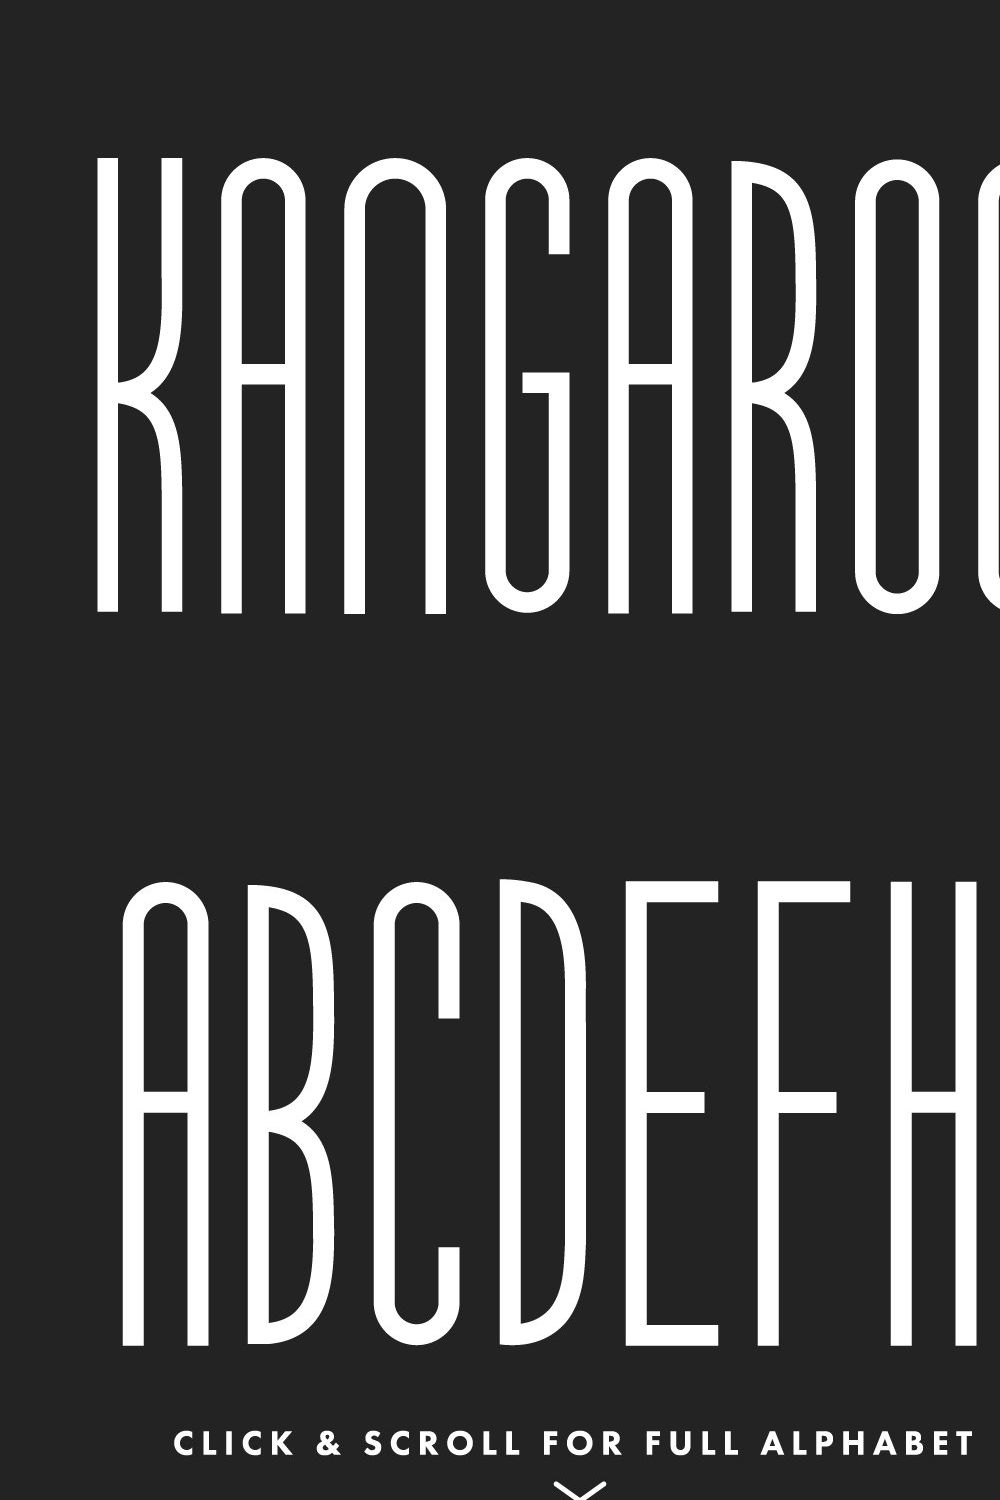 KANGAROO - Condensed Sans Serif pinterest preview image.